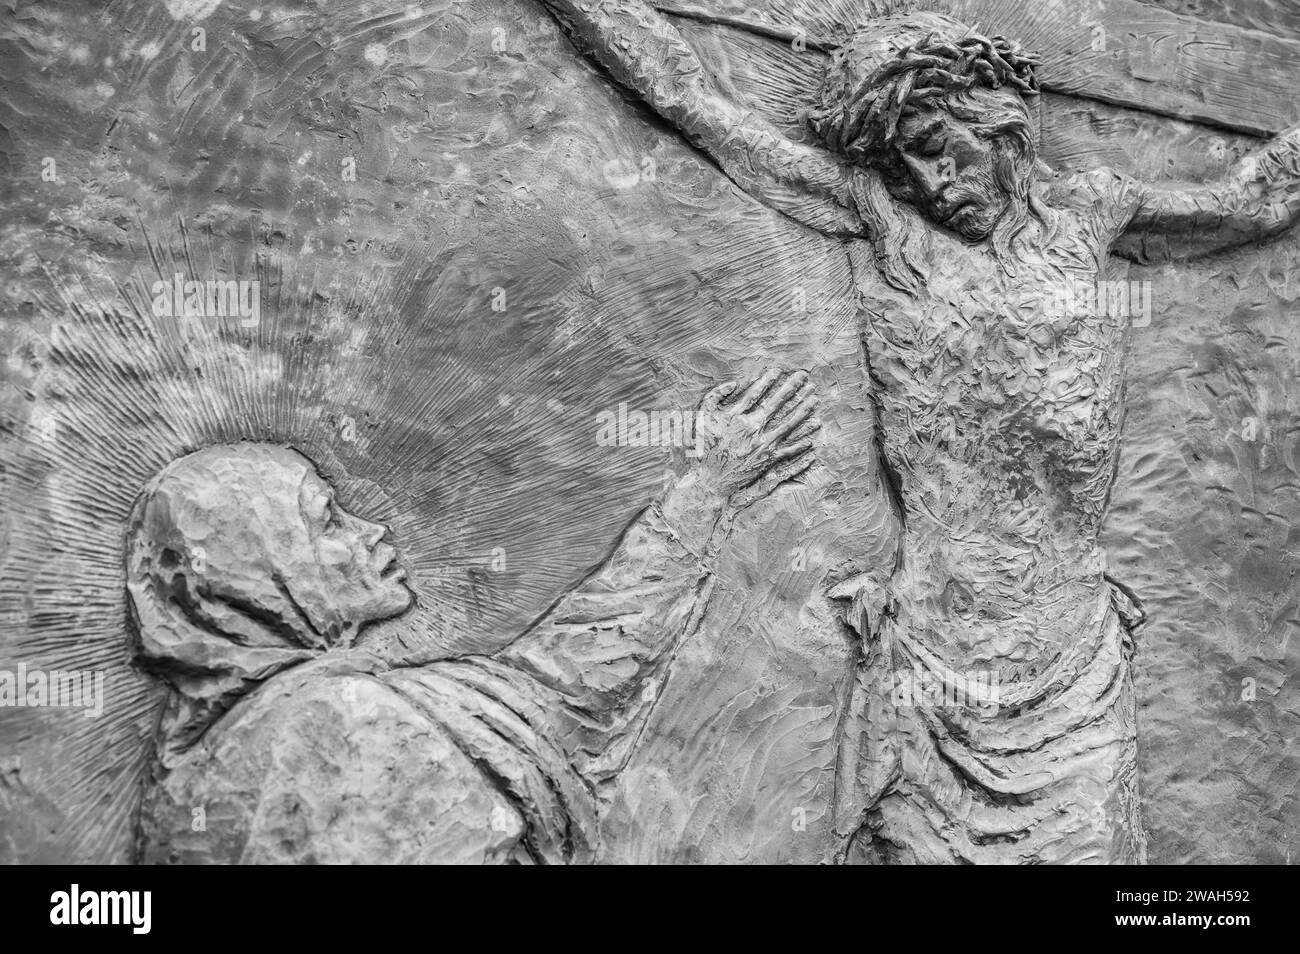 La Crocifissione di Gesù – Quinto mistero doloroso del Rosario. Una scultura in rilievo sul Monte Podbrdo (la collina delle apparizioni) a Medjugorje. Foto Stock